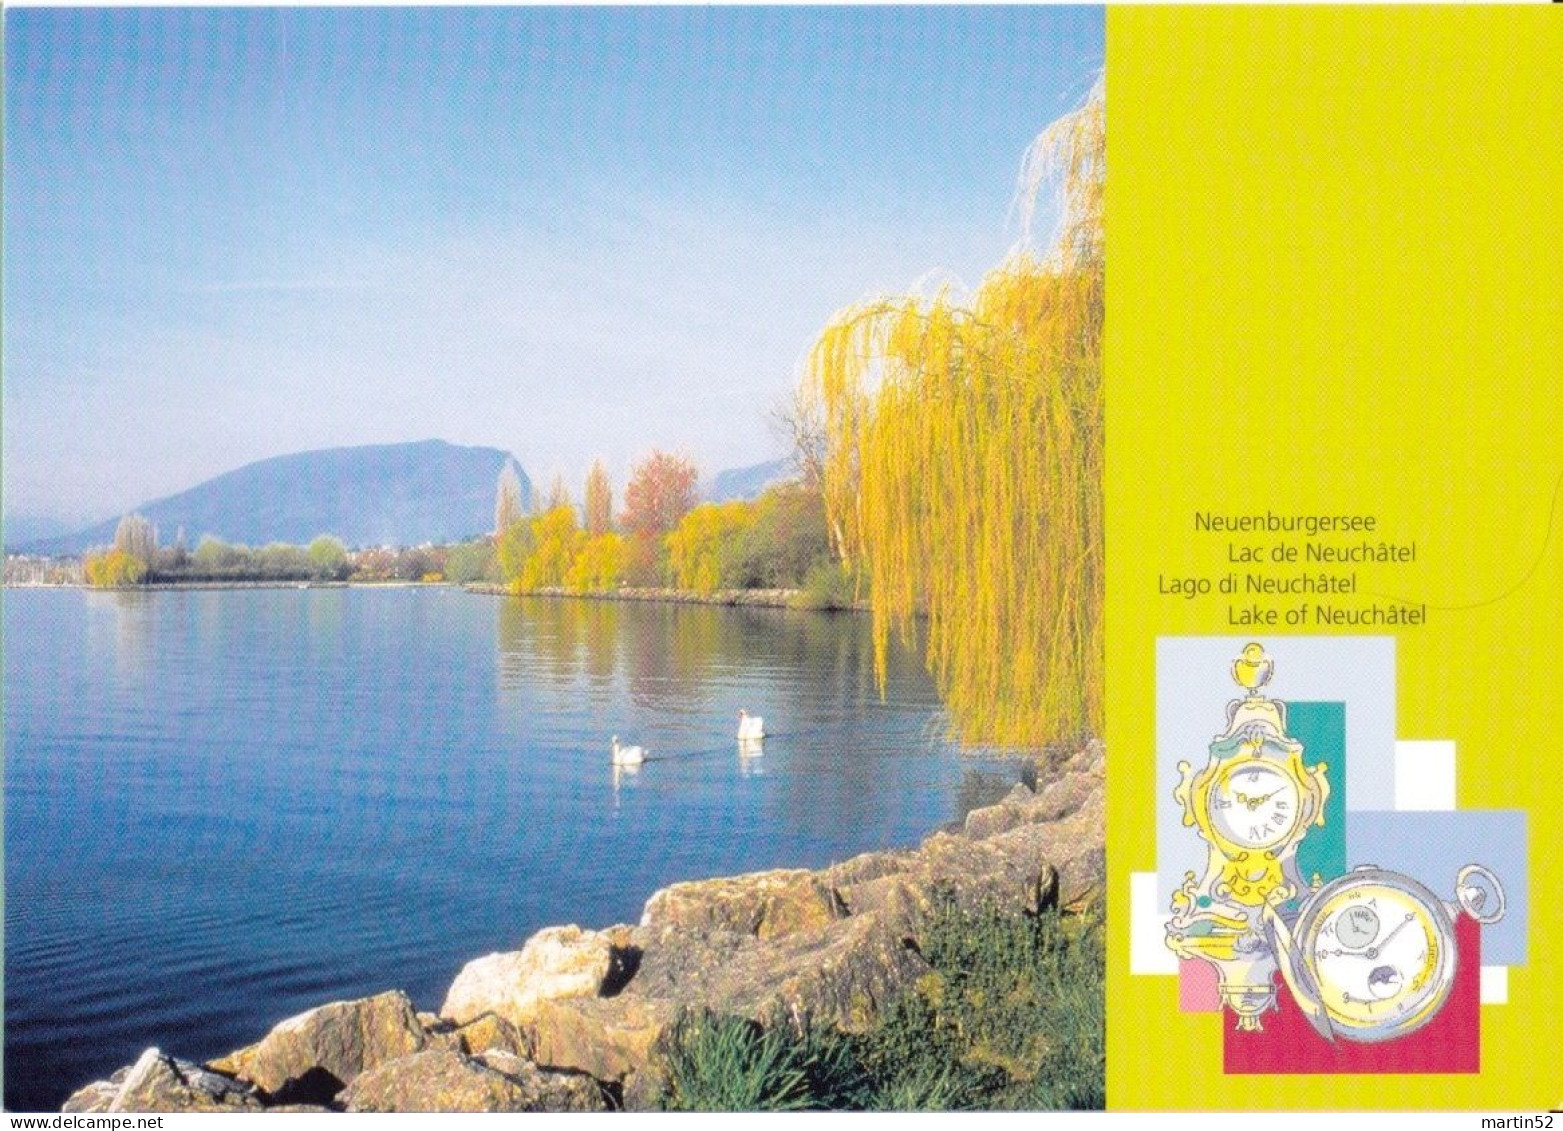 Schweiz Suisse 2002: Neuenburger See (Uhren) Lac De Neuchâtel (Pendules) CPI Entier / Bild-PK (ungelaufen Non Circulé) - Clocks